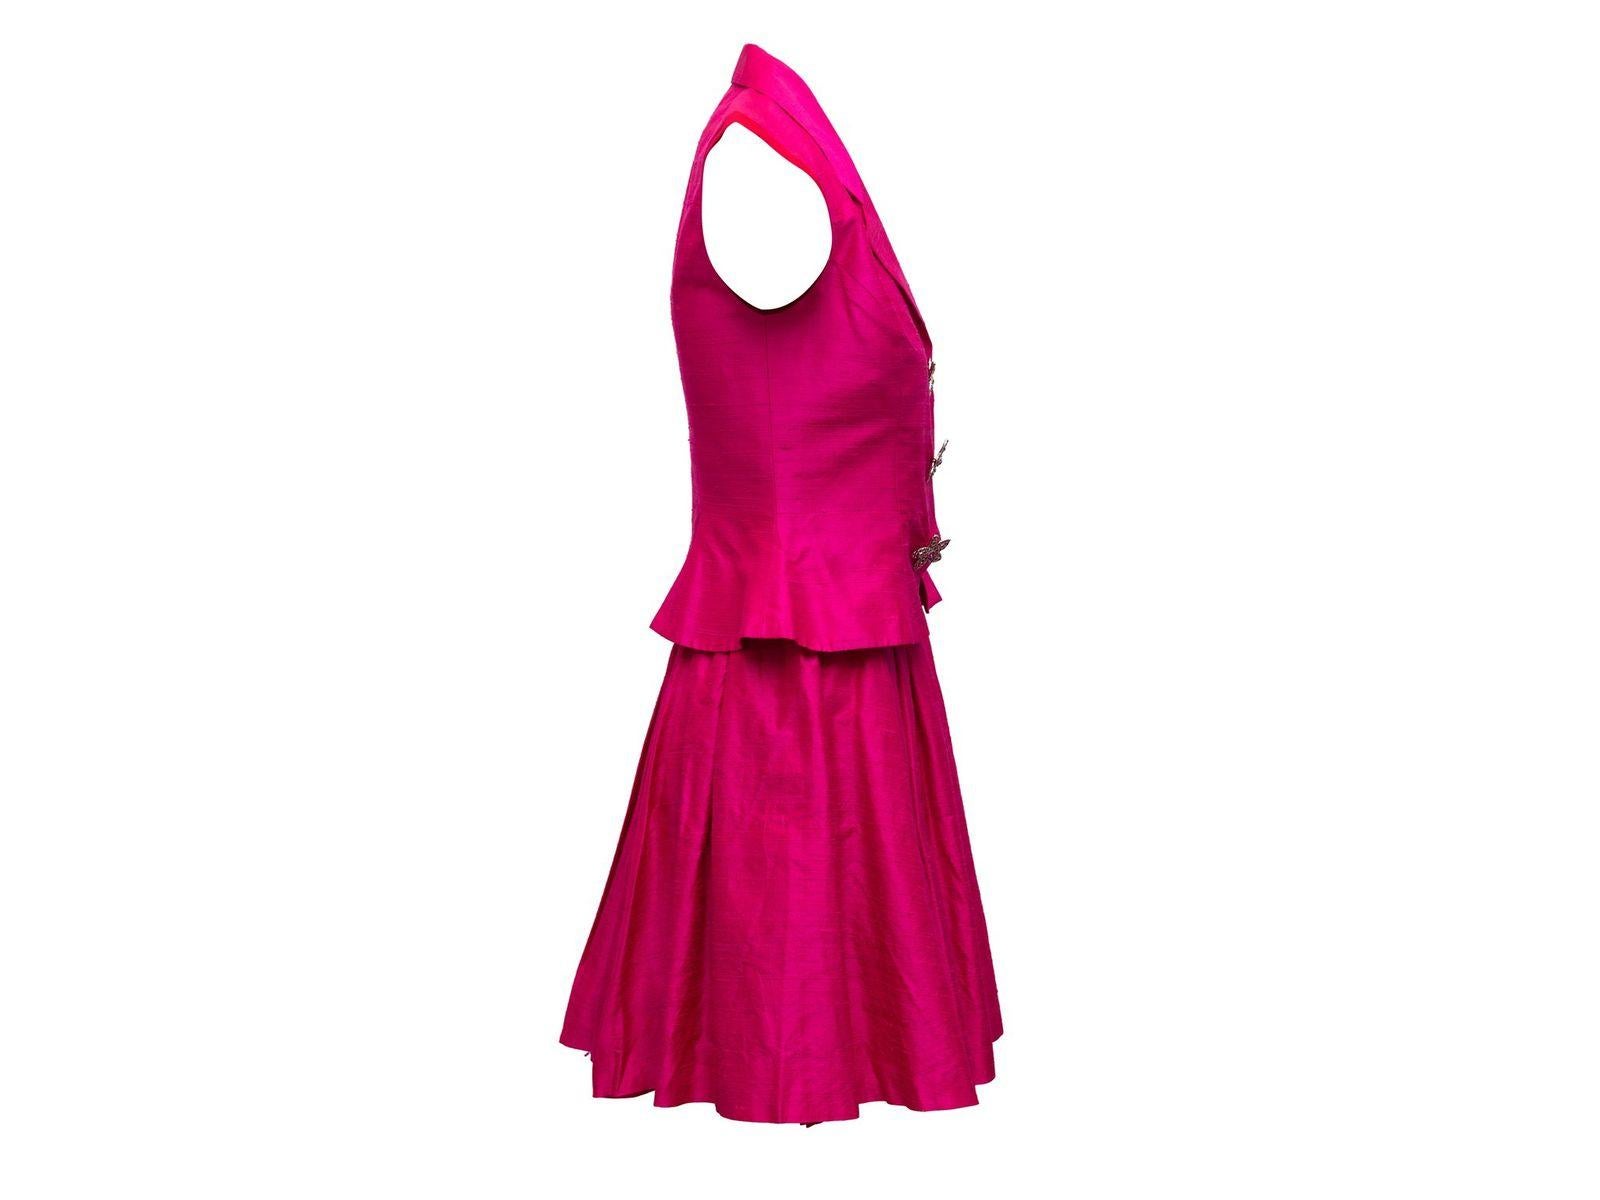 Women's Nicole Miller Hot Pink Matching Skirt & Top Set